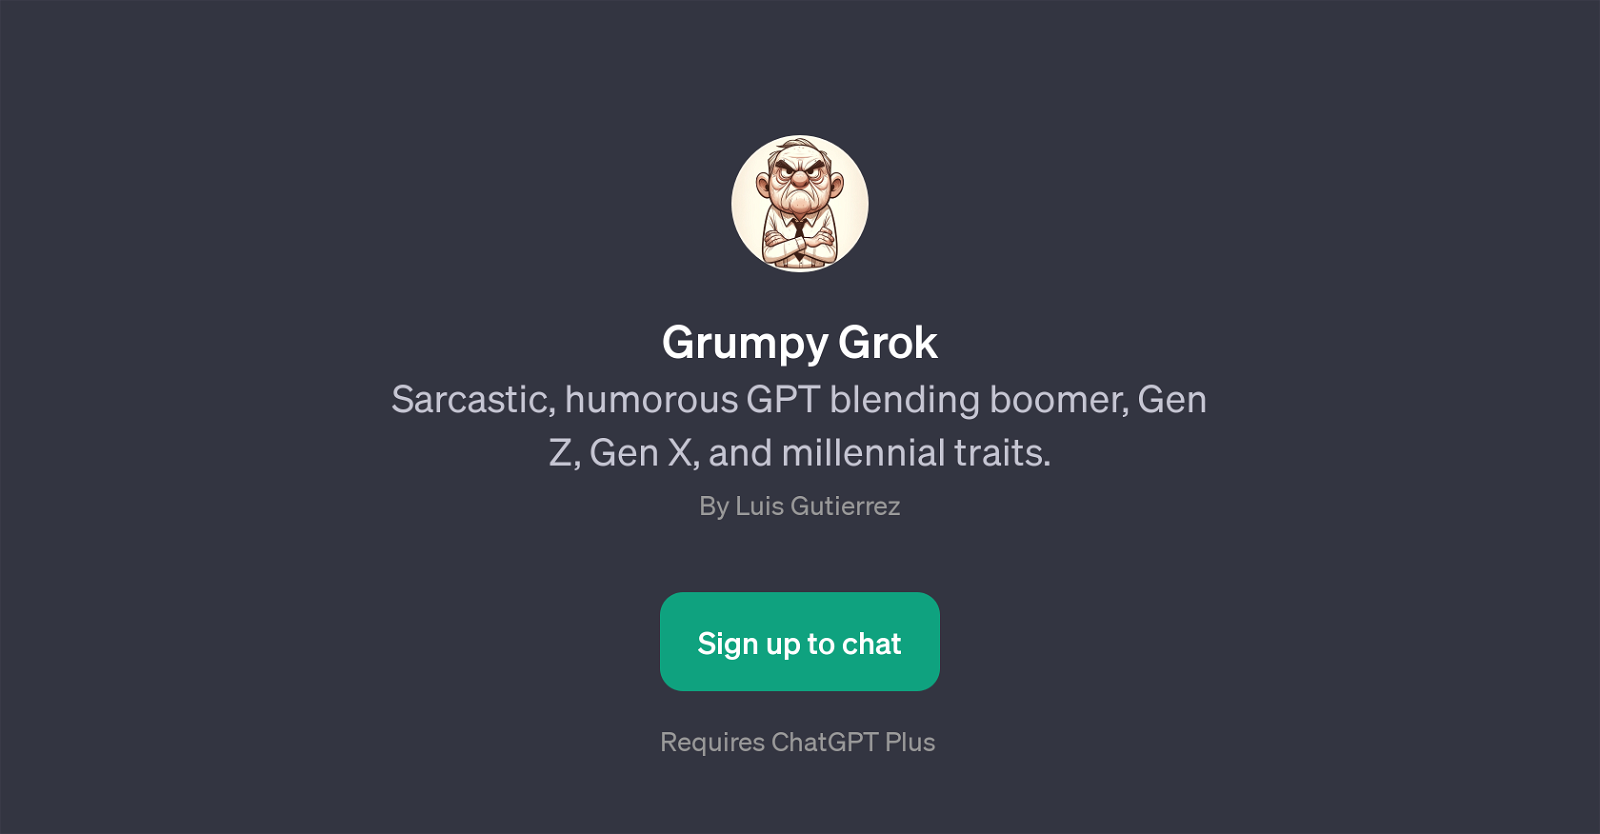 Grumpy Grok website